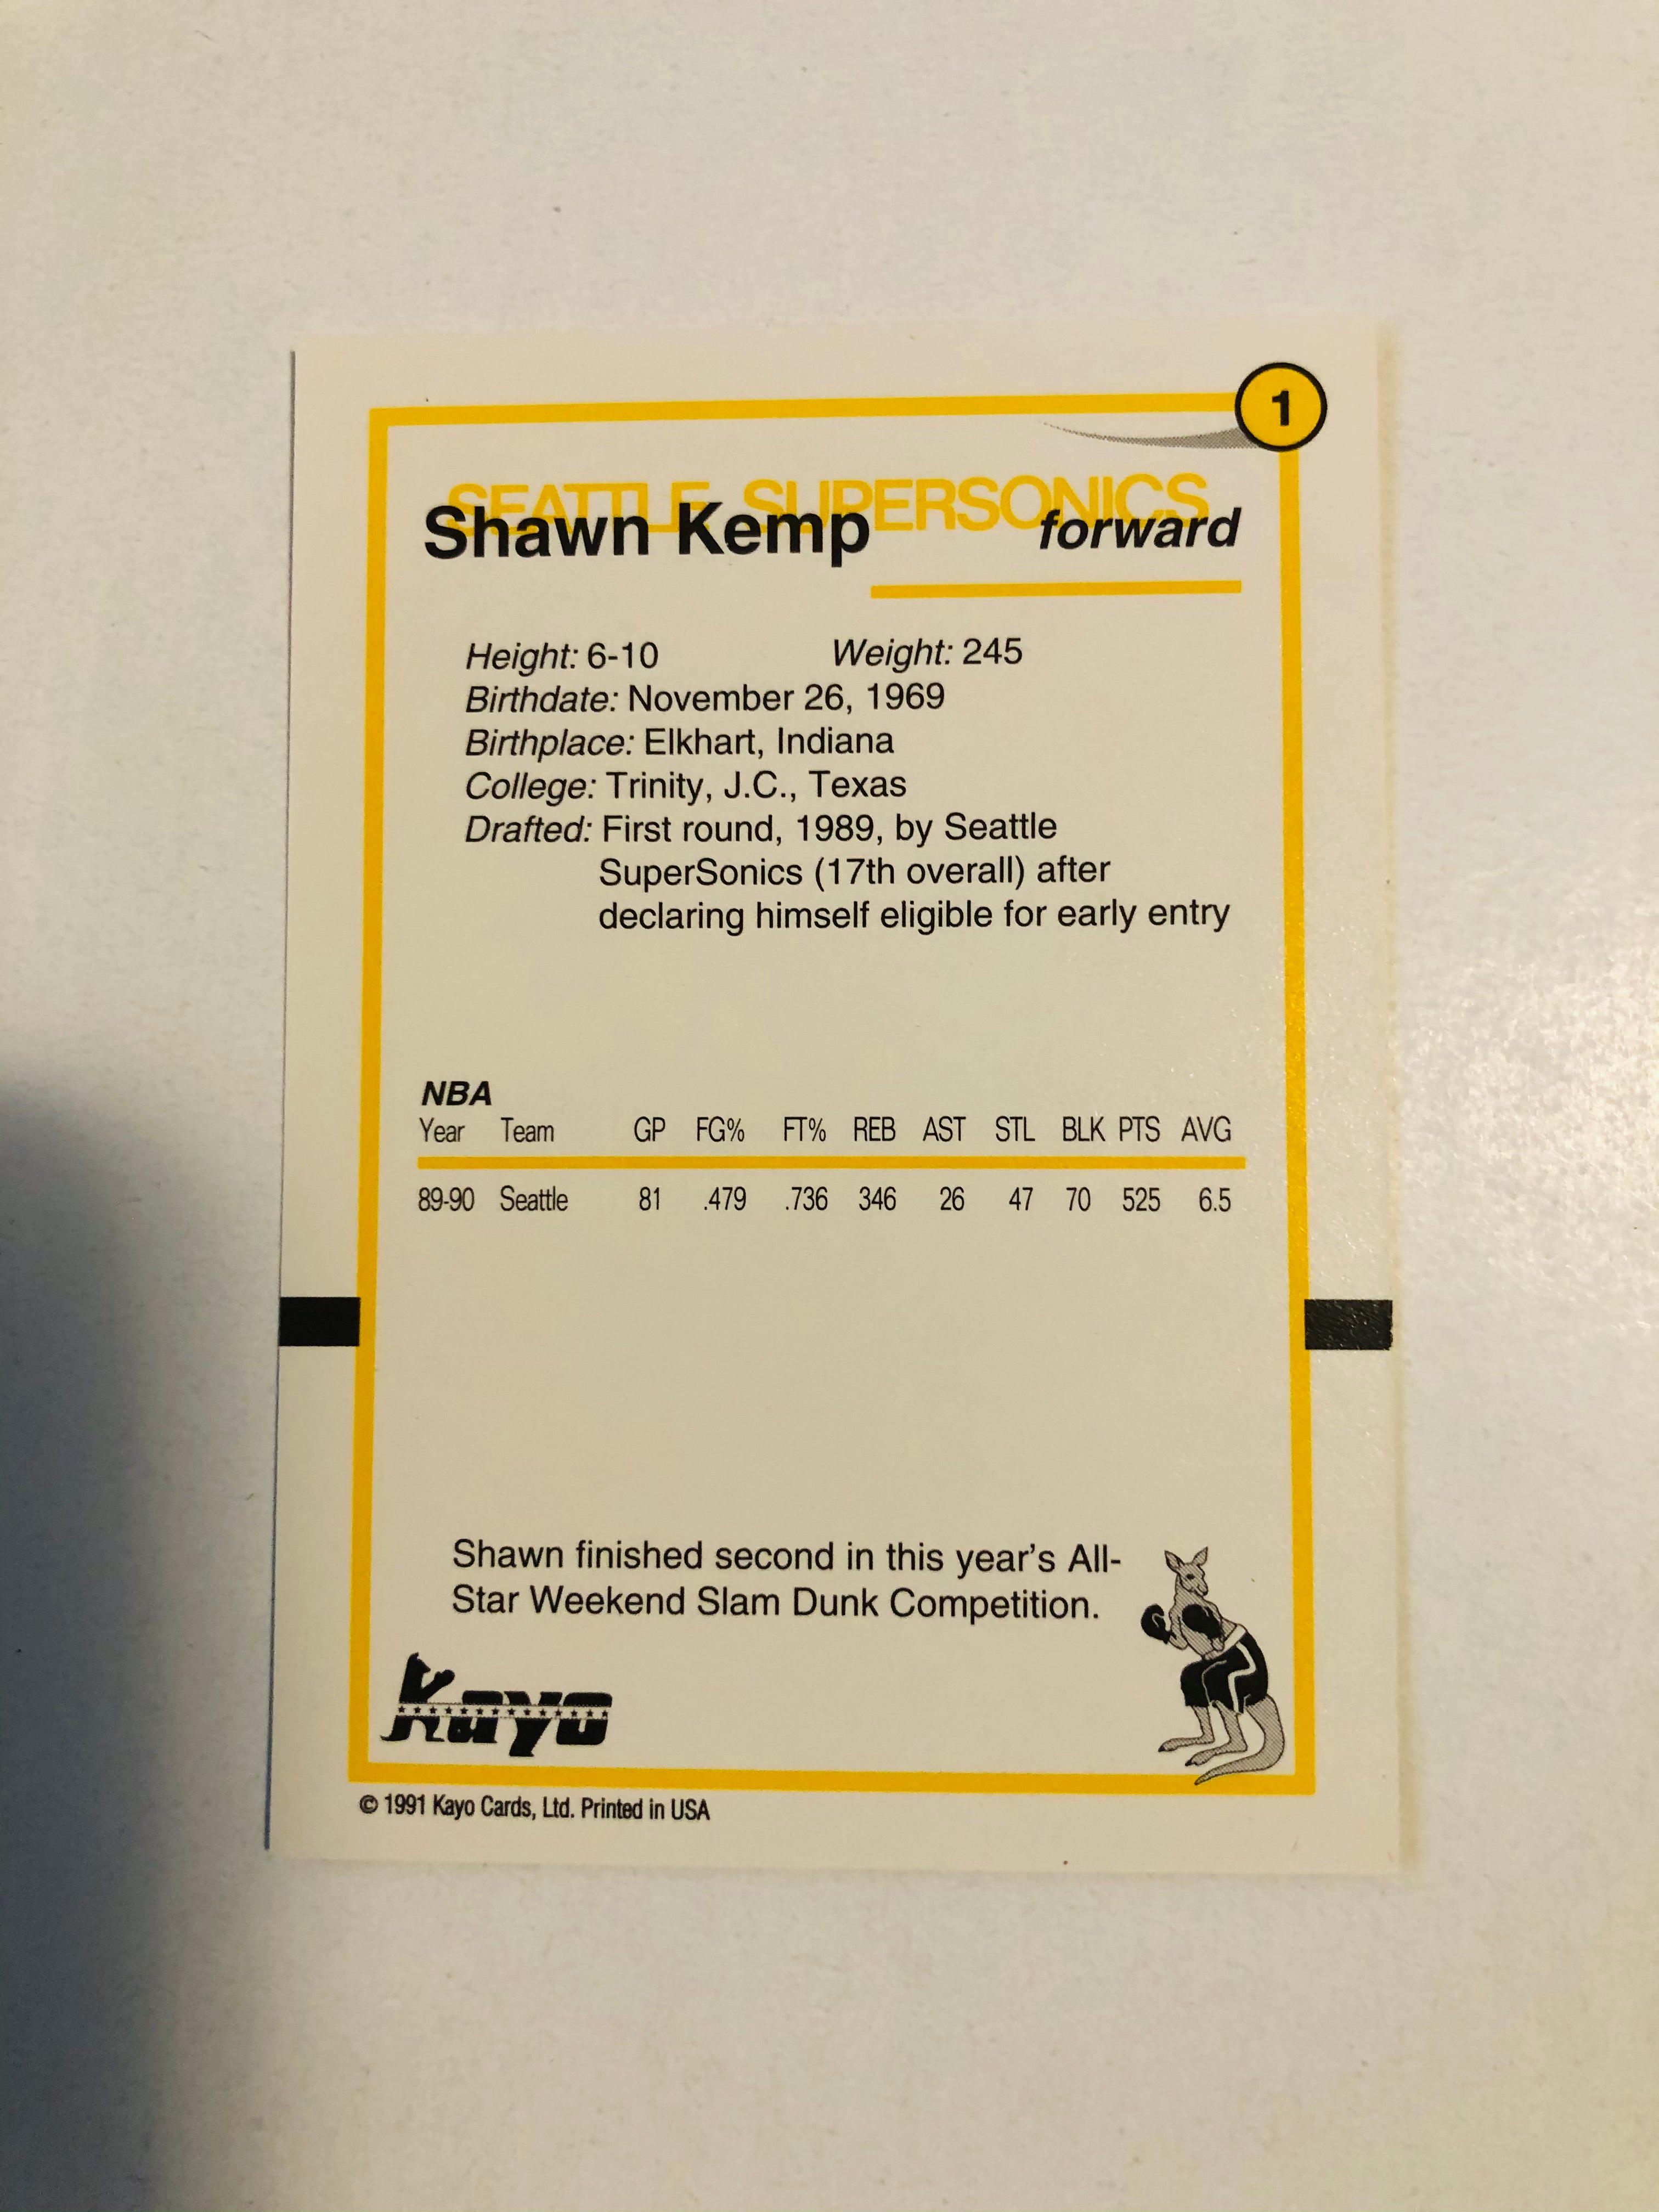 Shawn Kemp rare Kayo basketball rookie card 1991